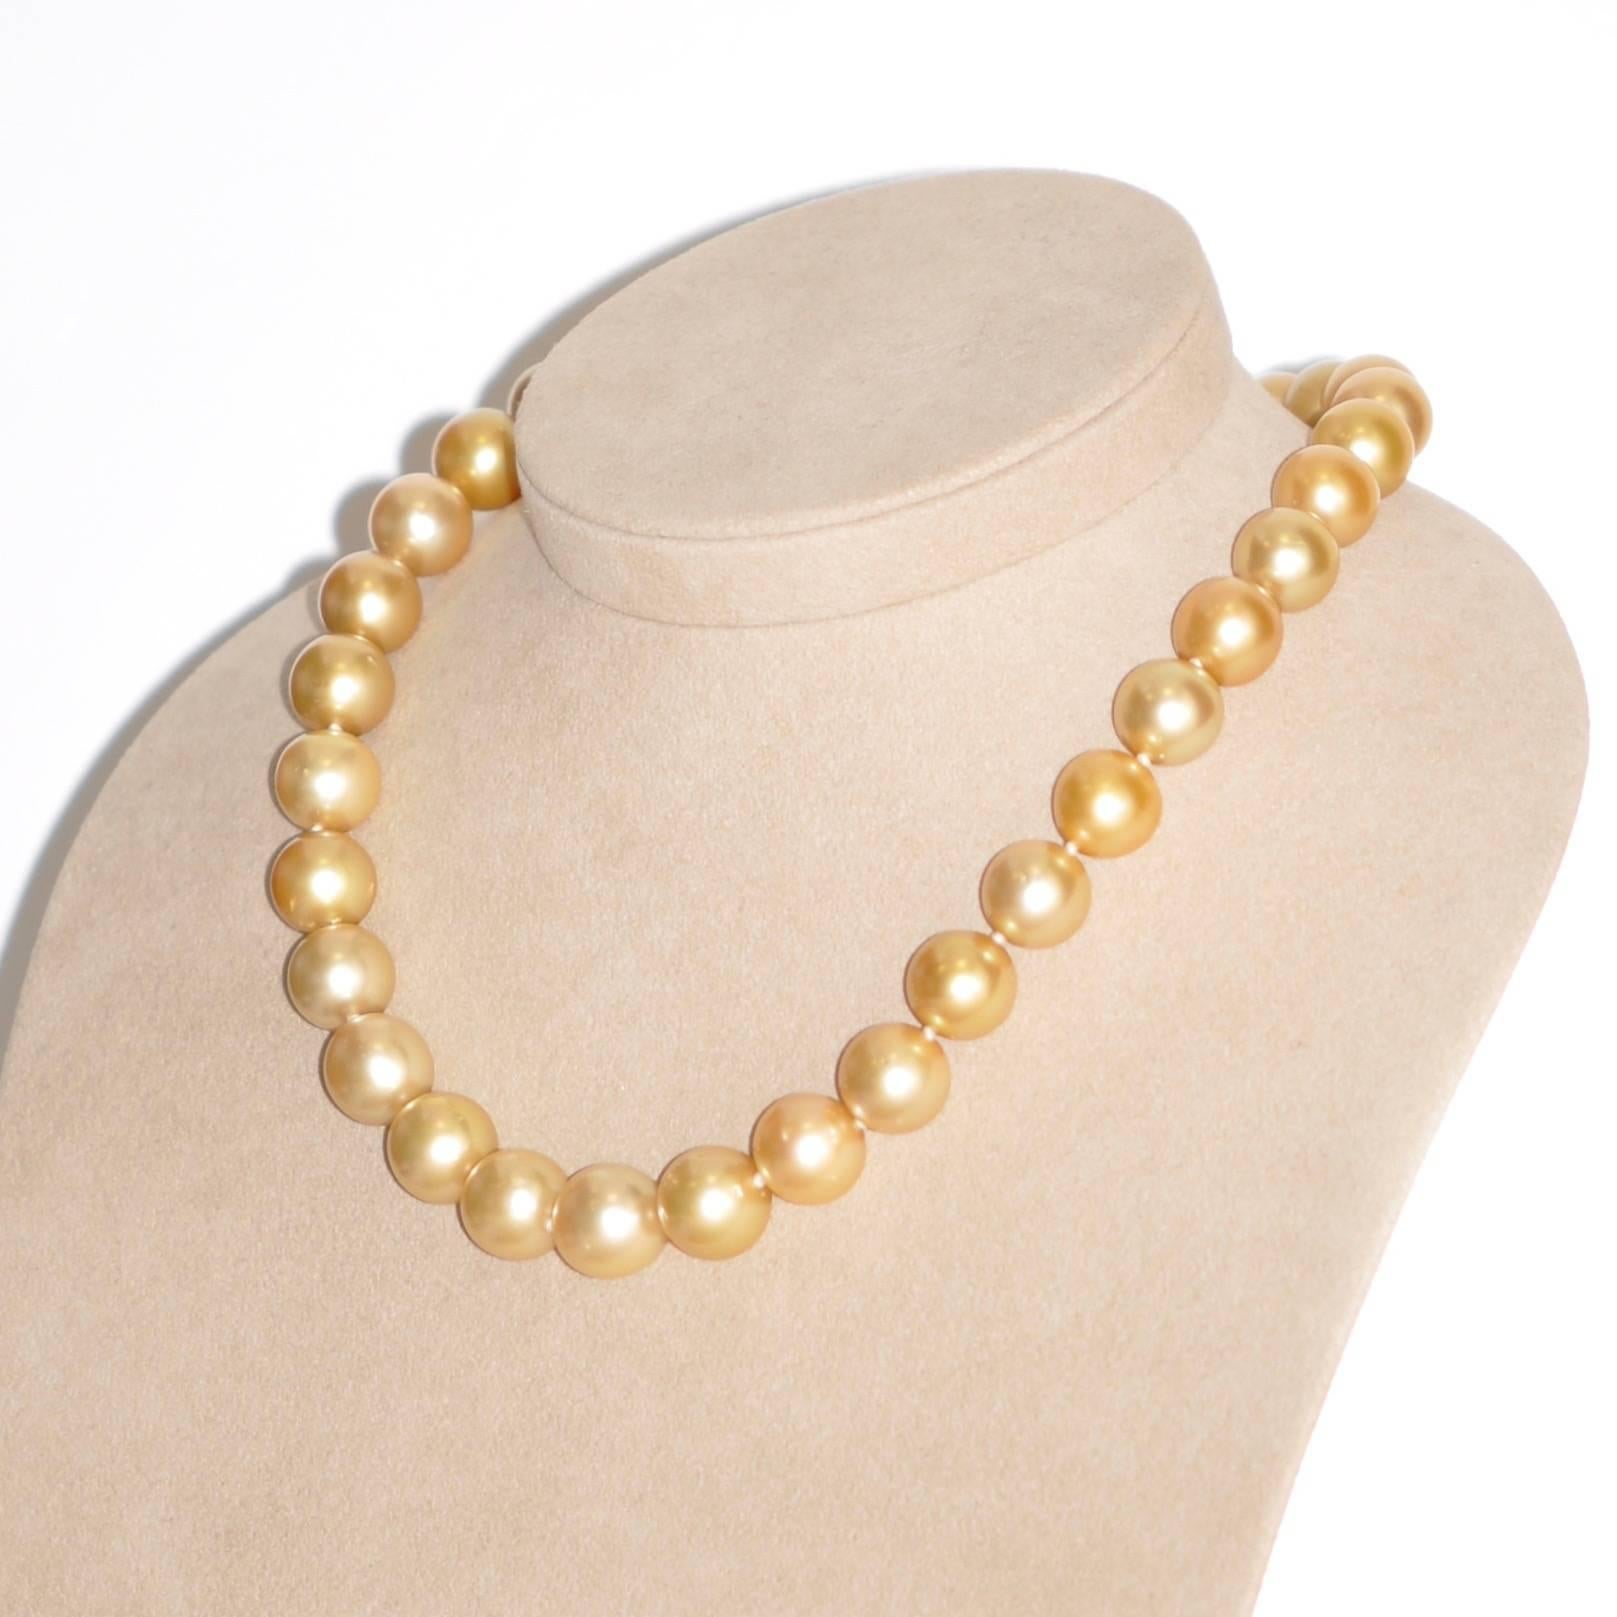 Un magnifique collier de perles dorées des mers du Sud, véritable chef-d'œuvre de l'océan qui incarne l'élégance et la sophistication. Composée de 32 perles dorées des mers du Sud mesurant 14/12 mm, chacune est unique, reflétant la beauté naturelle